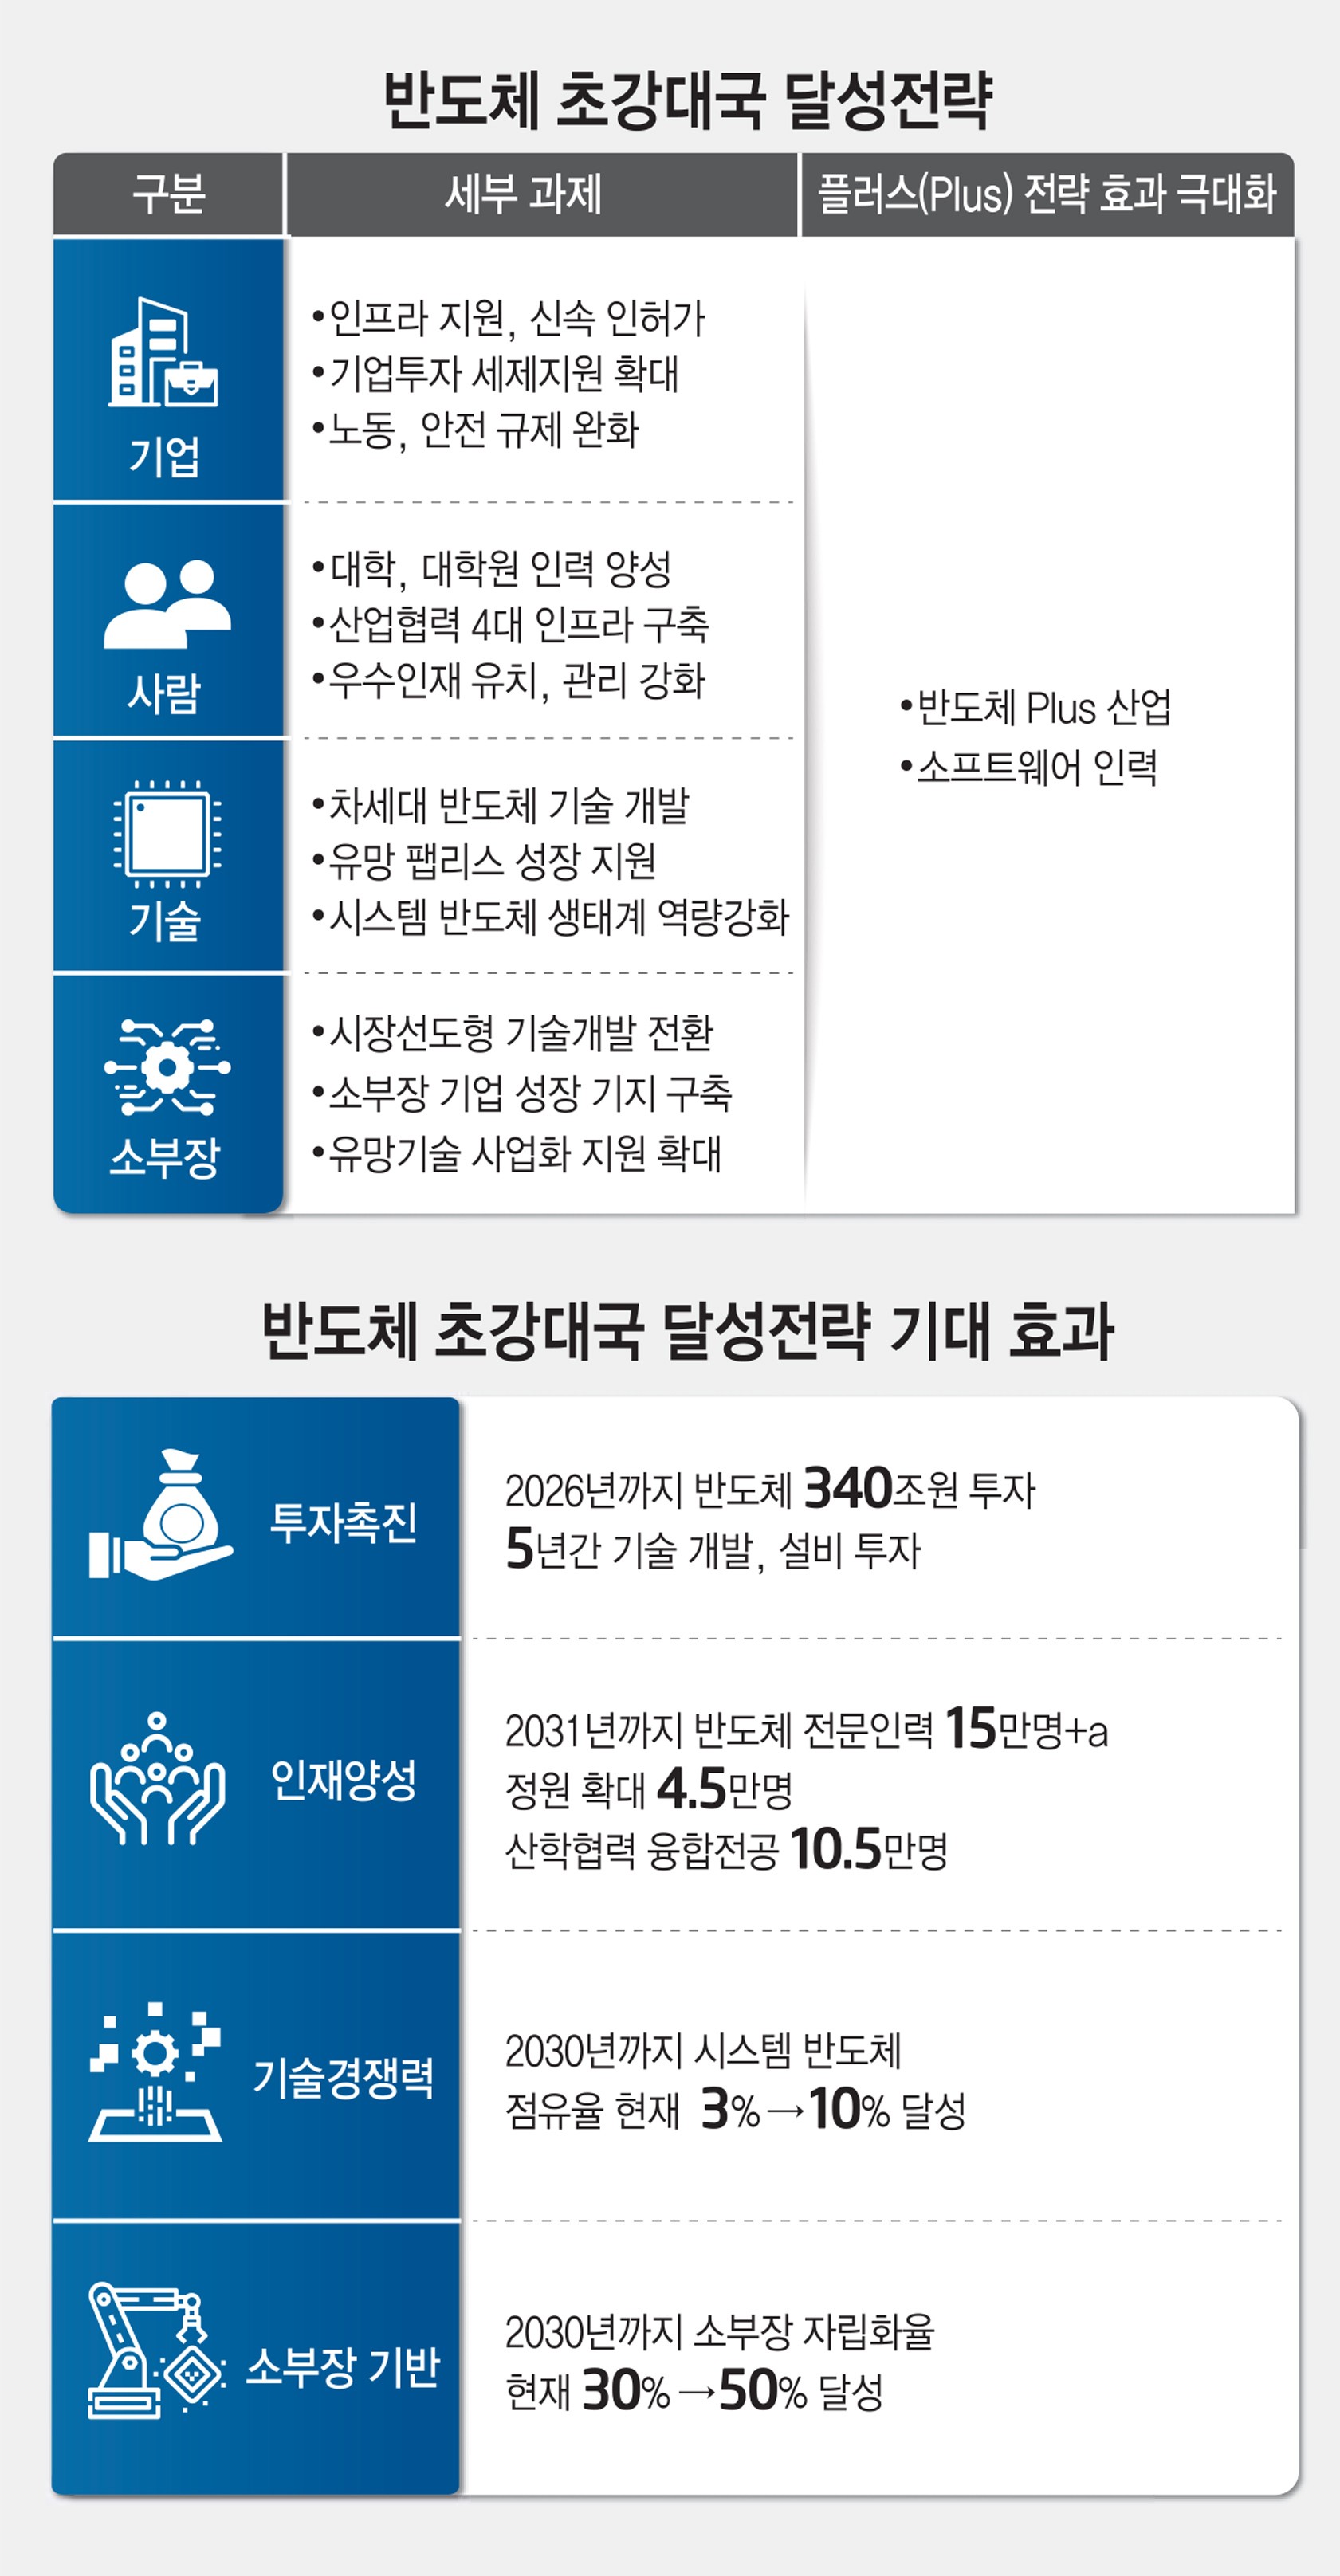 [스페셜리포트]정부, 반도체 5년 340조원 투자 유인 전방위 지원